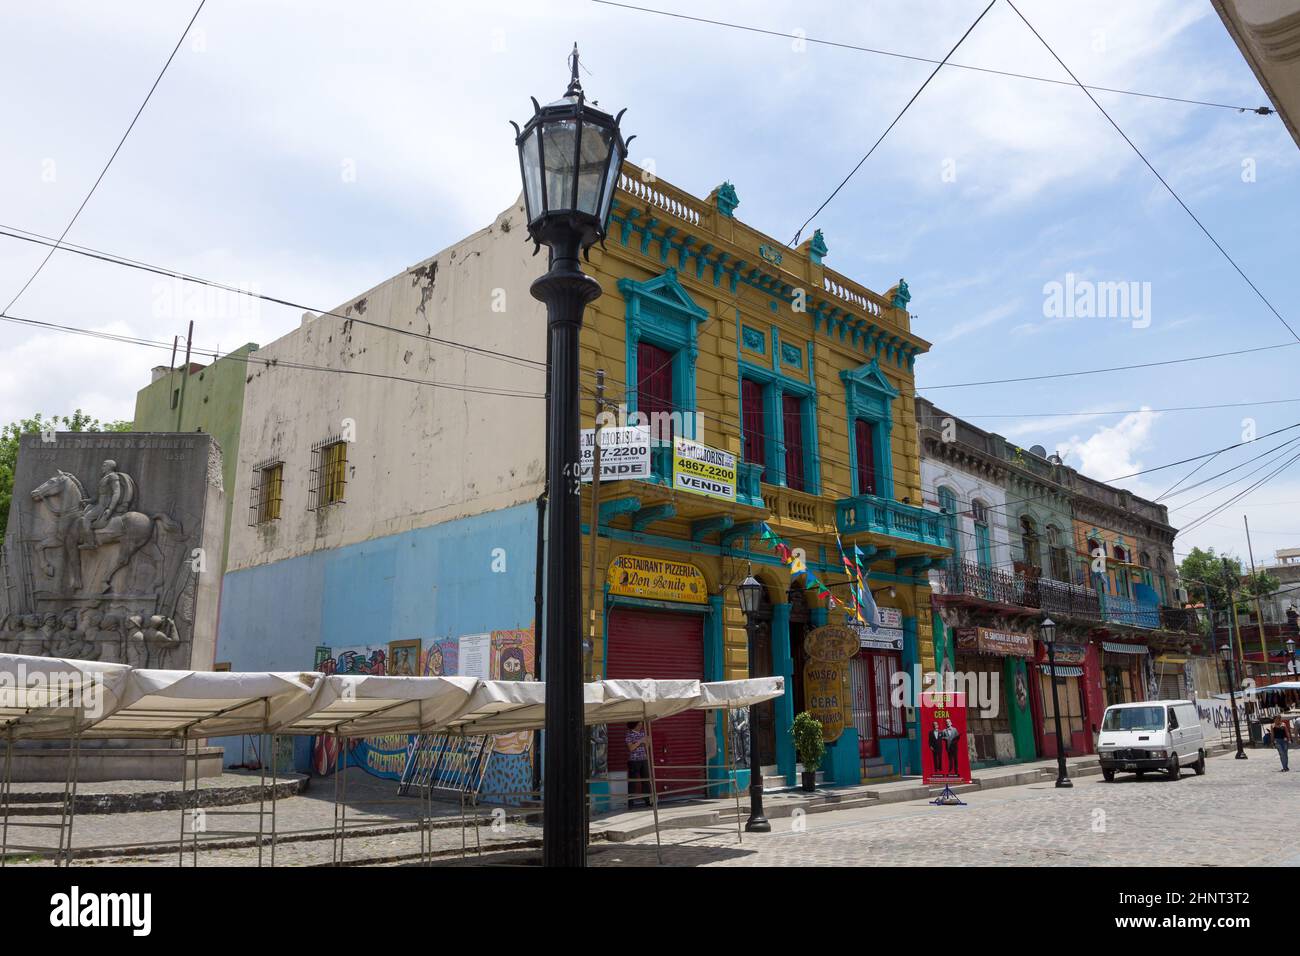 La Boca neighborhood with few people, Argentina landmark Stock Photo